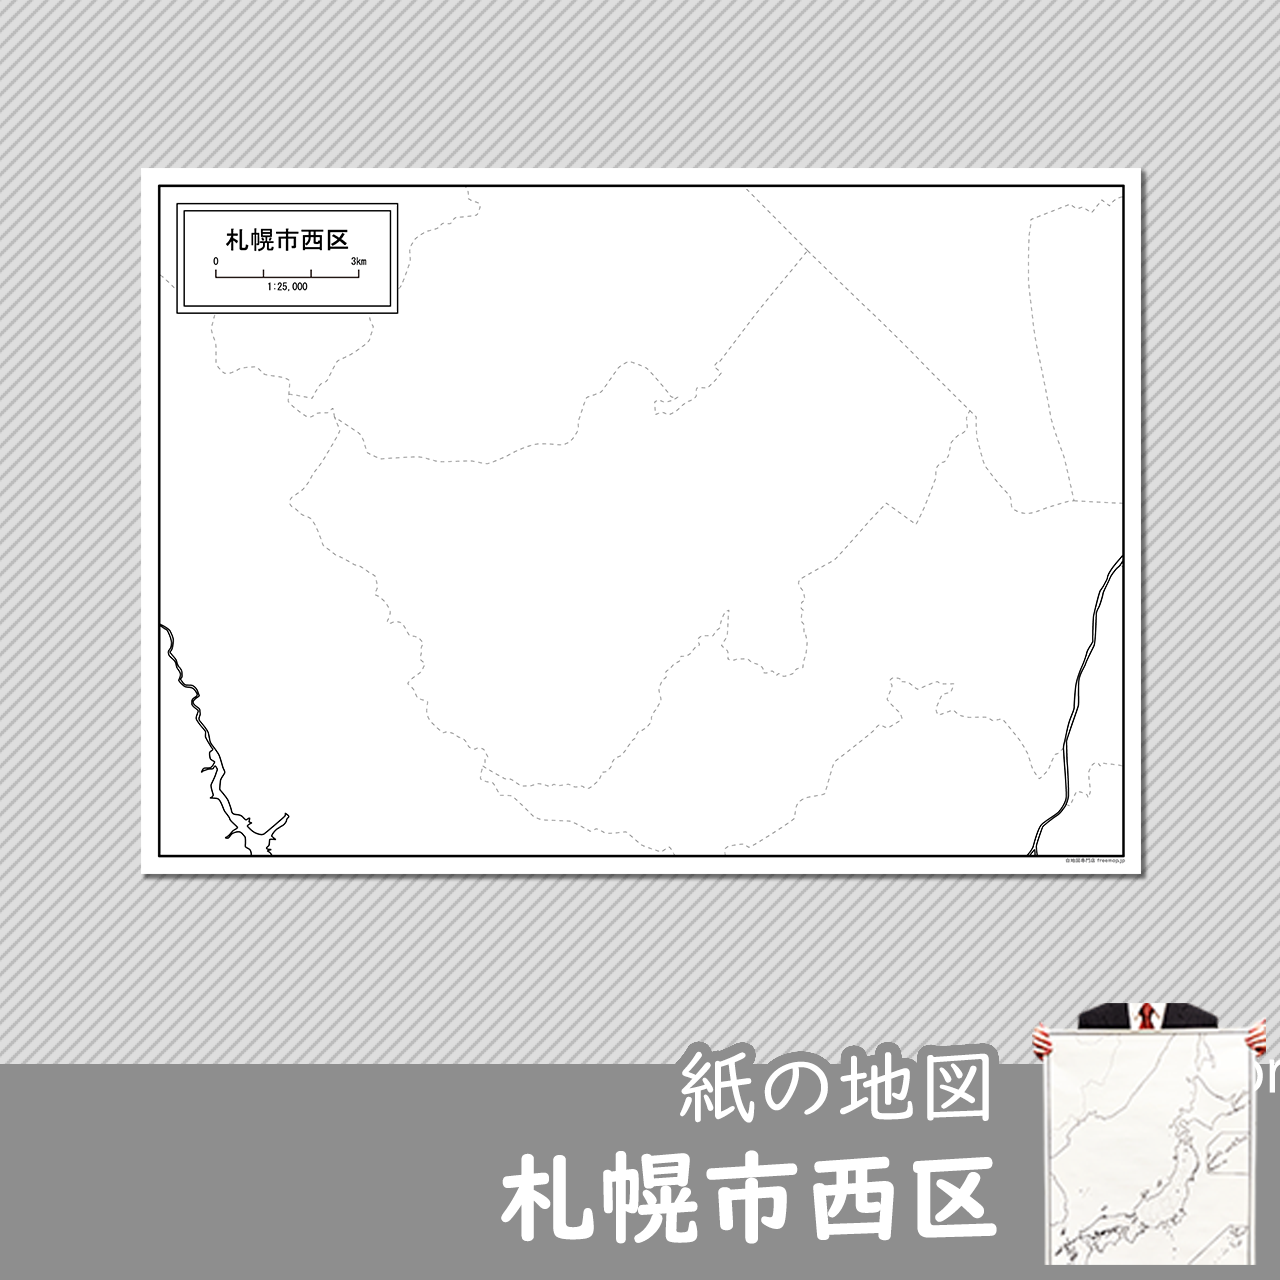 札幌市西区の紙の白地図のサムネイル